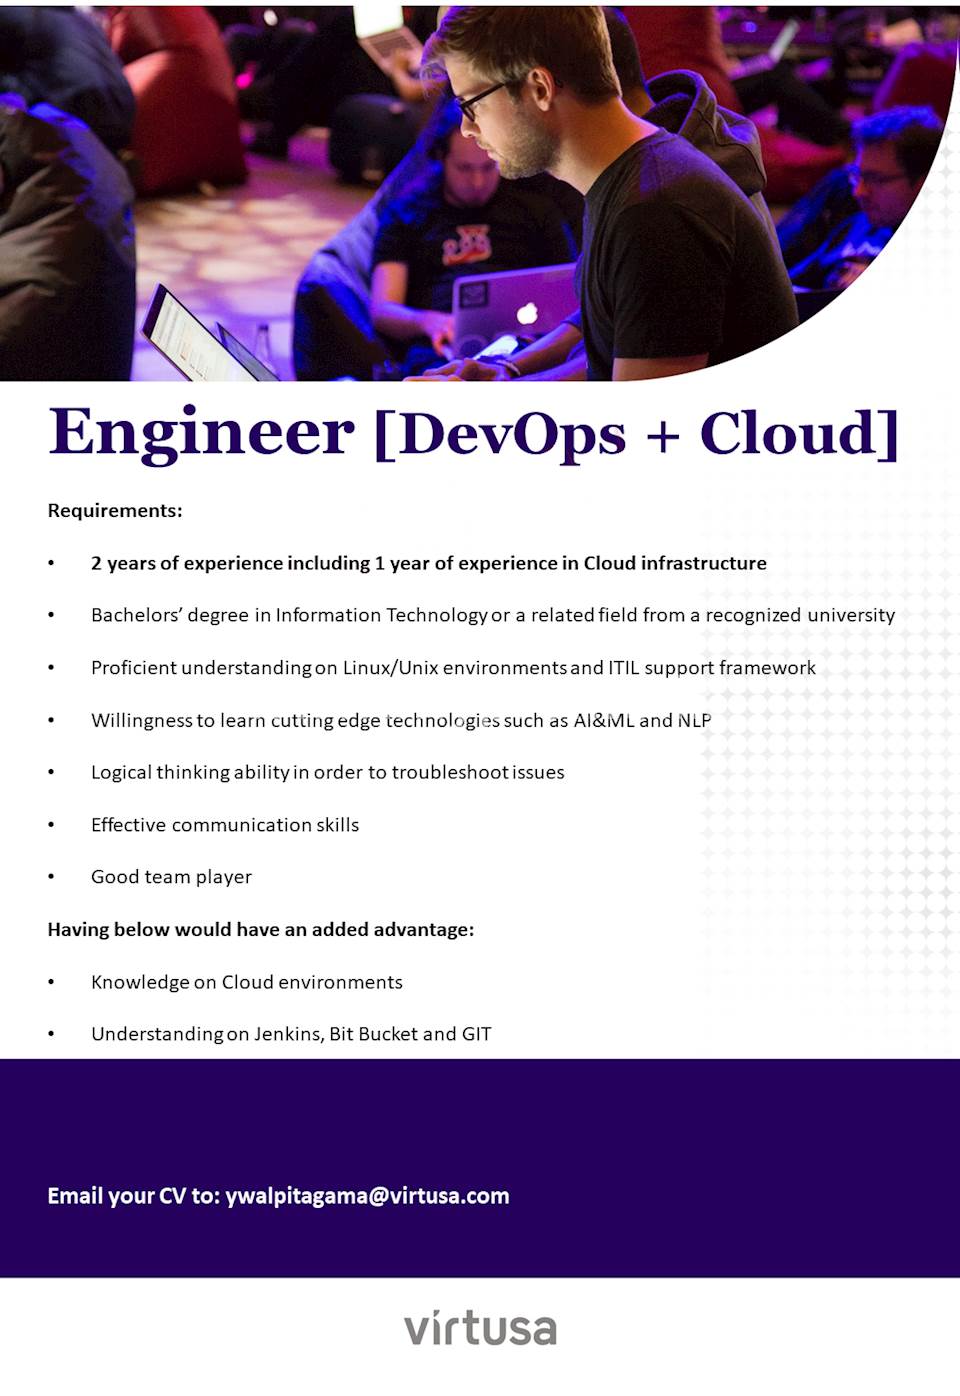 Engineer (DevOps + Cloud)